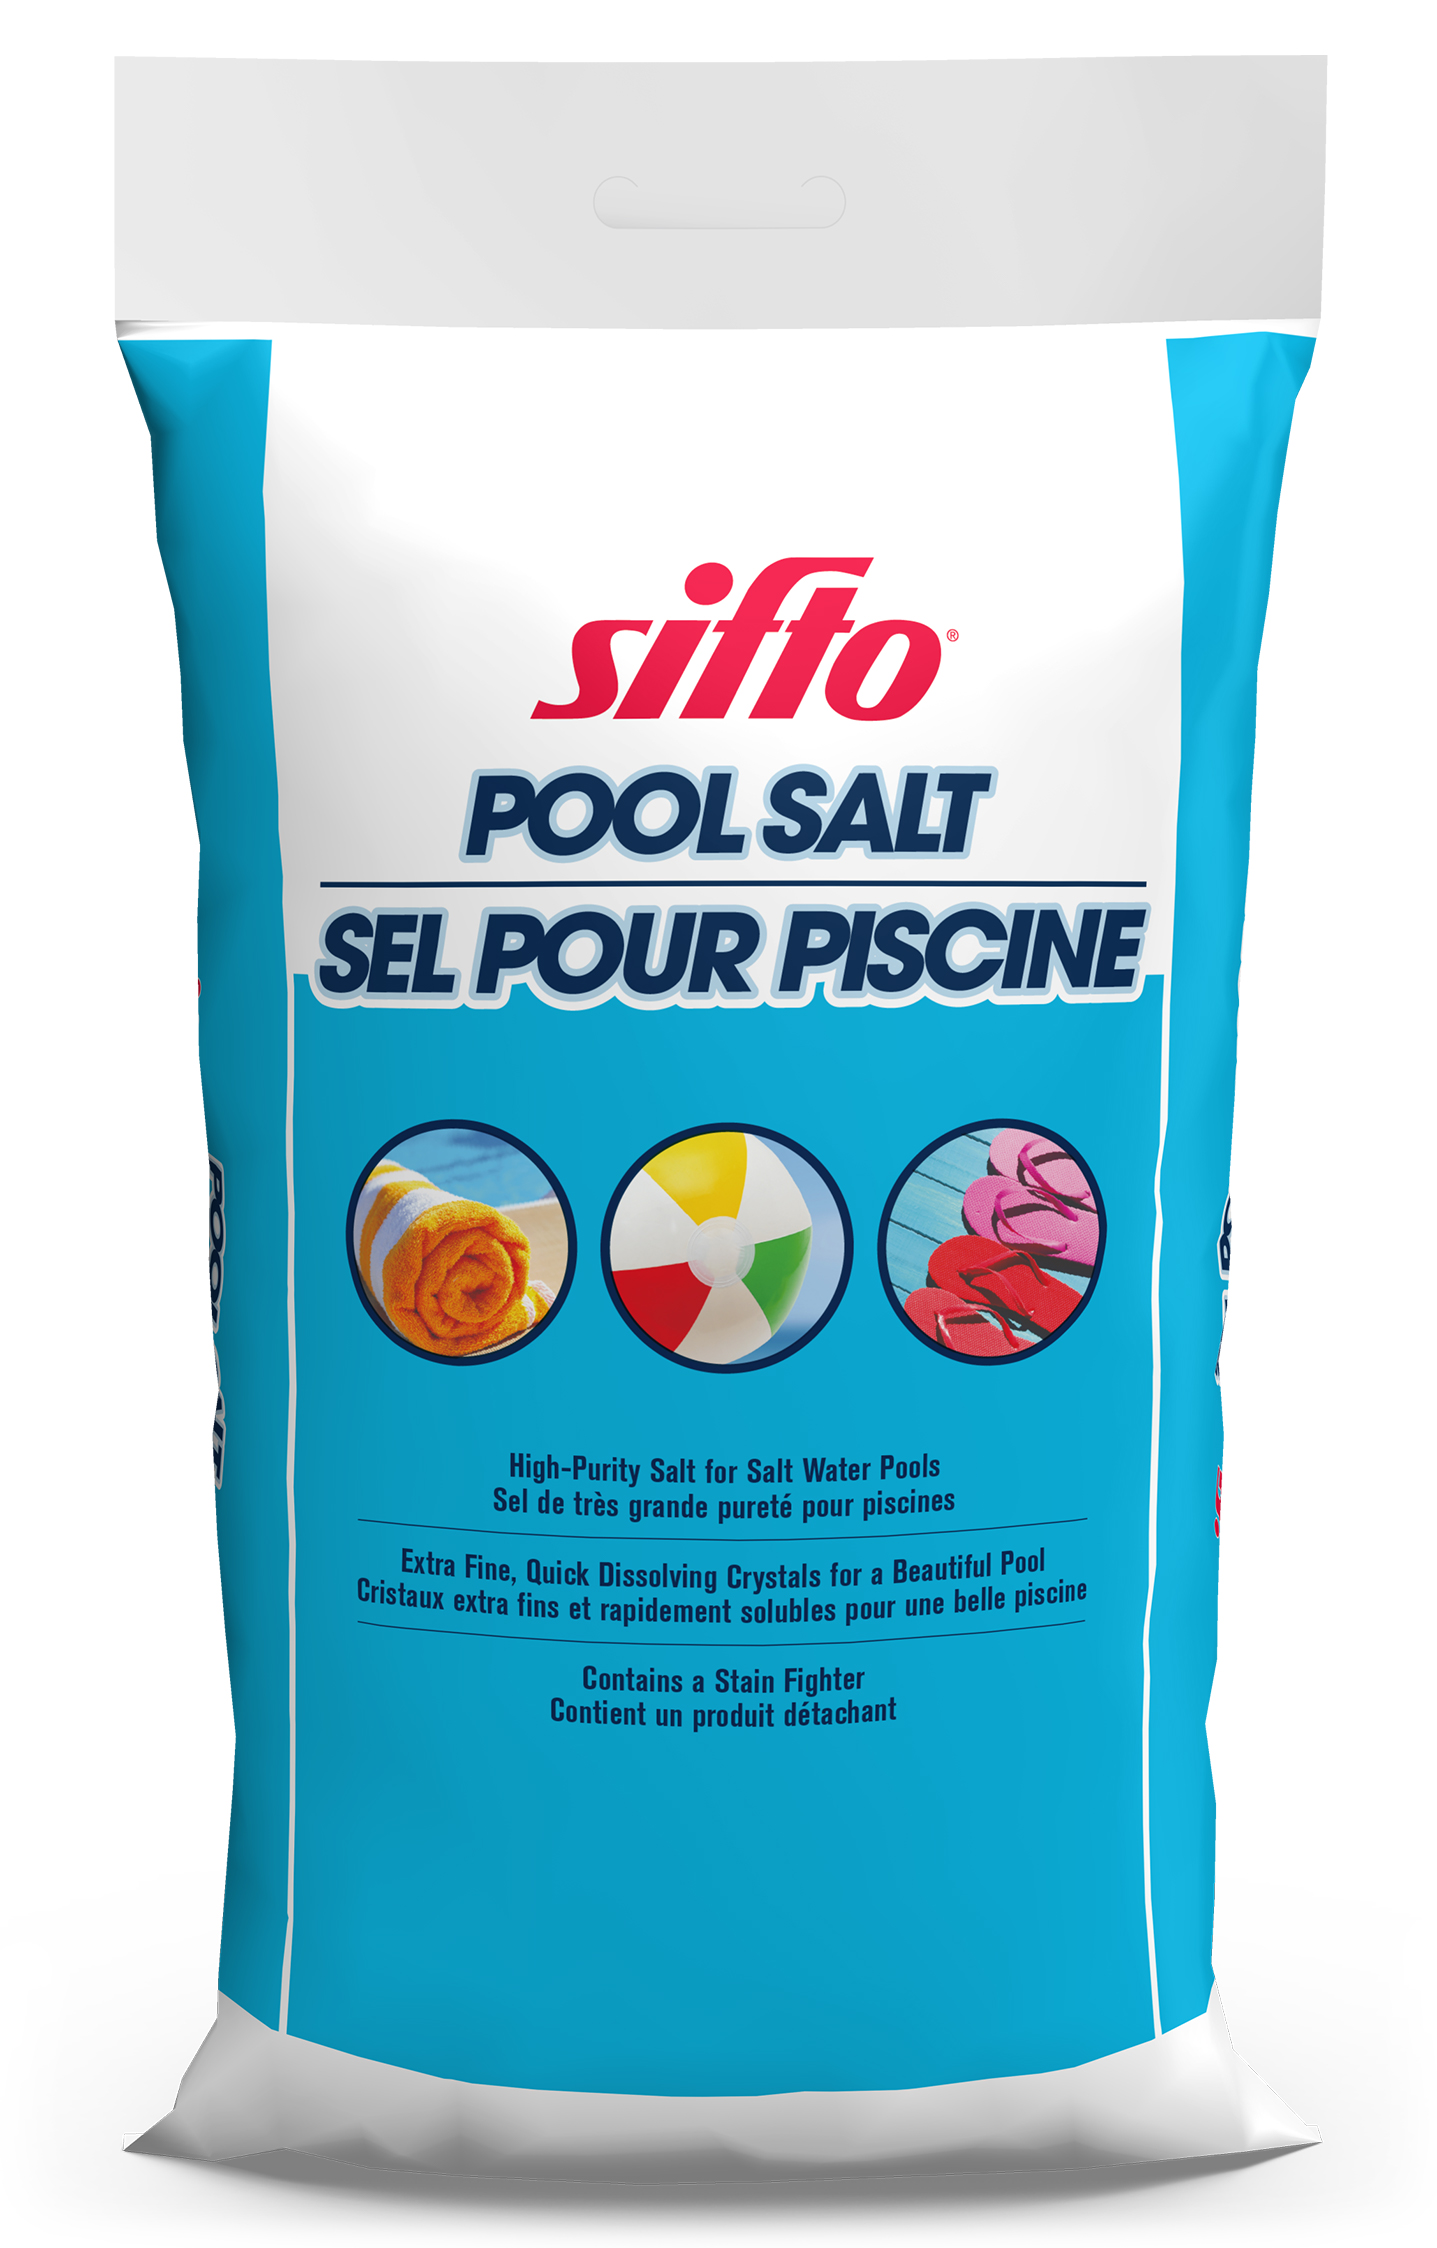 Sifto Pool Salt Bag